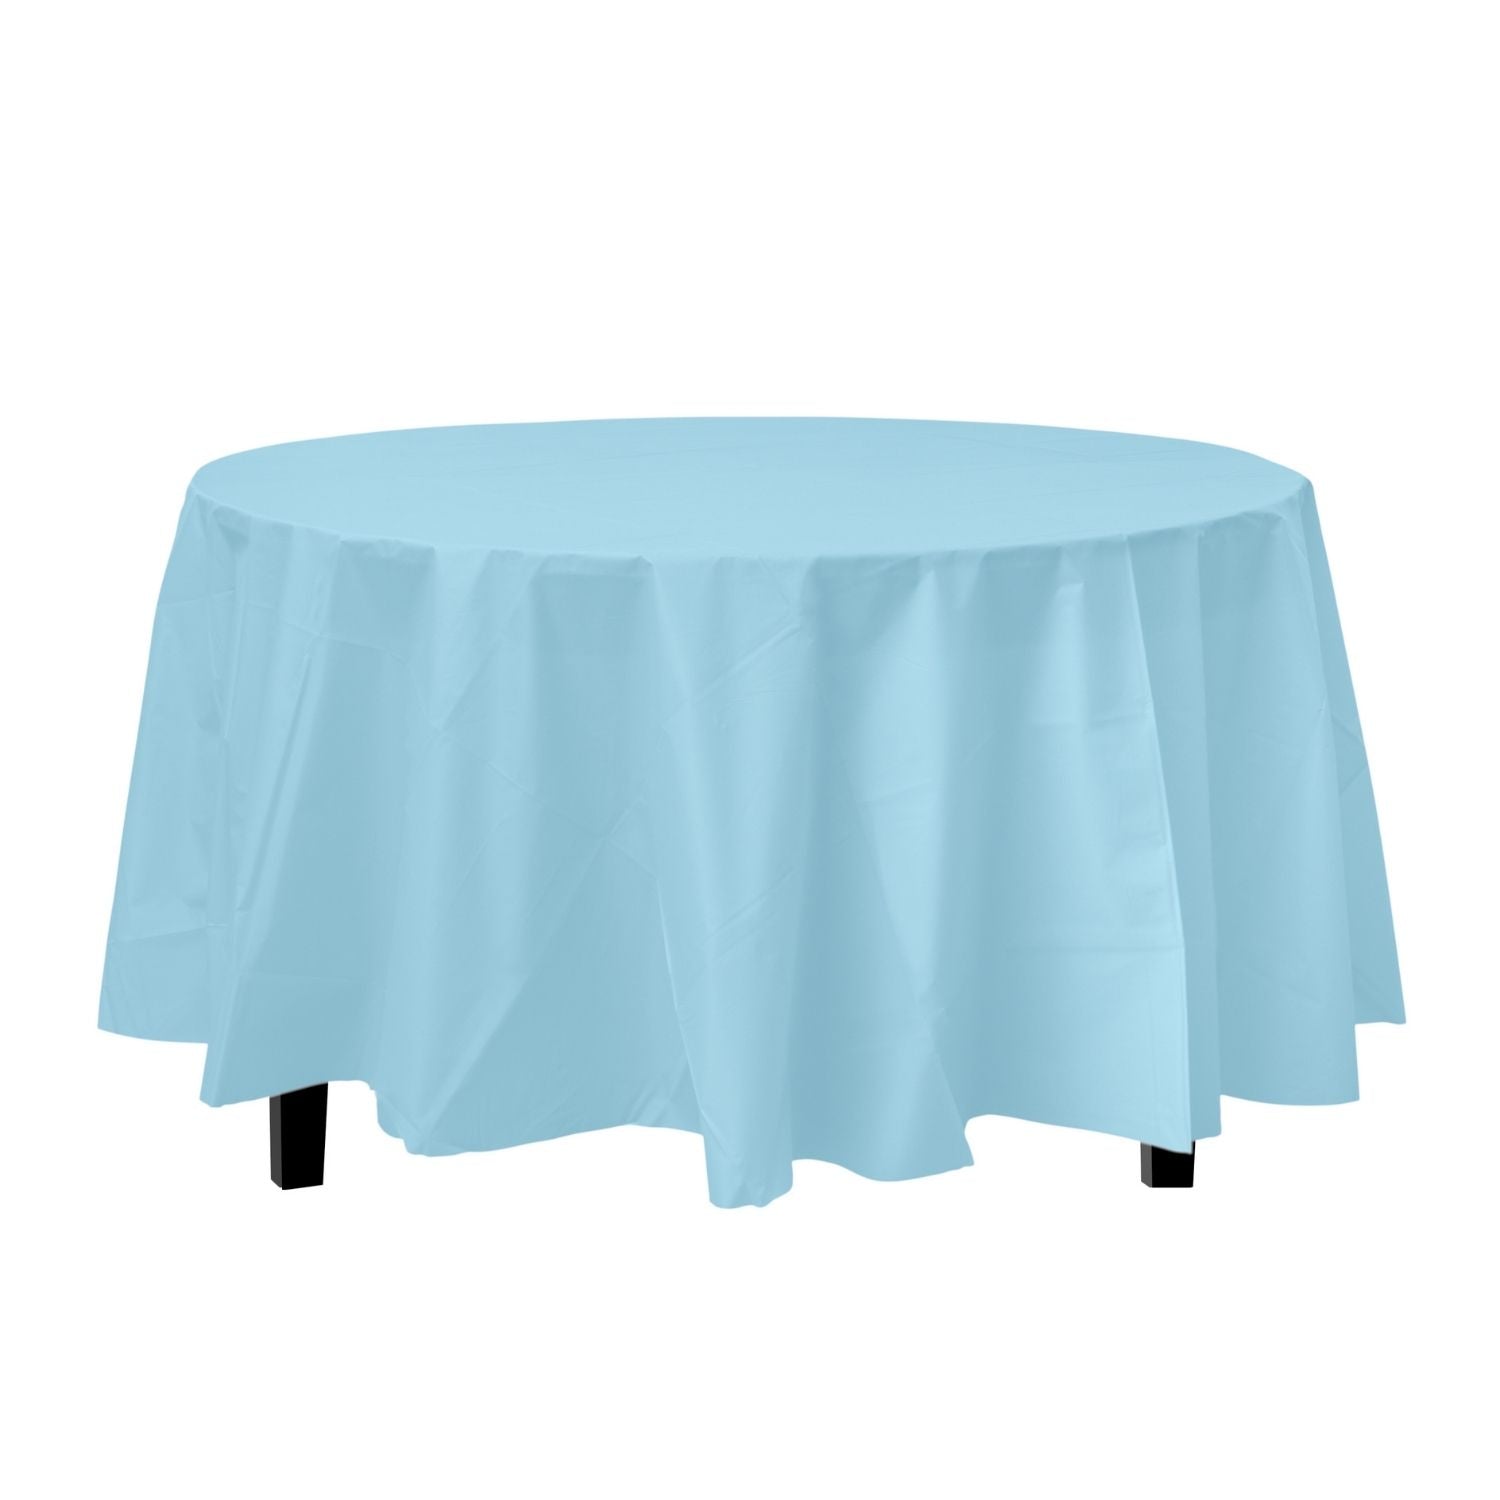 Premium Round Light Blue Plastic Tablecloth | 96 Count